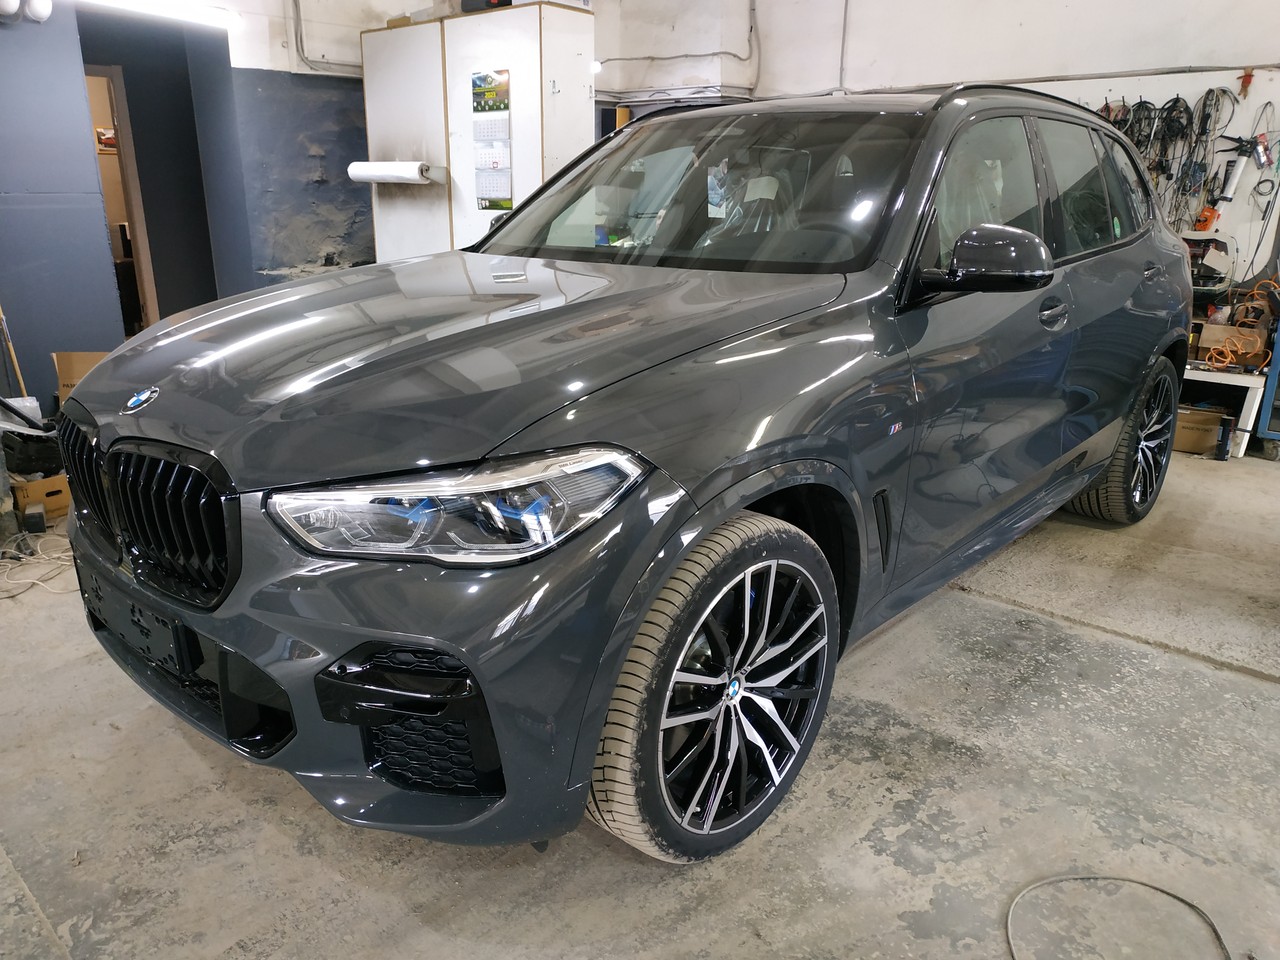 дооснащение BMW X5 G05 40d 2022 г.в. в сервисе BMWupgrade, Екатеринбург